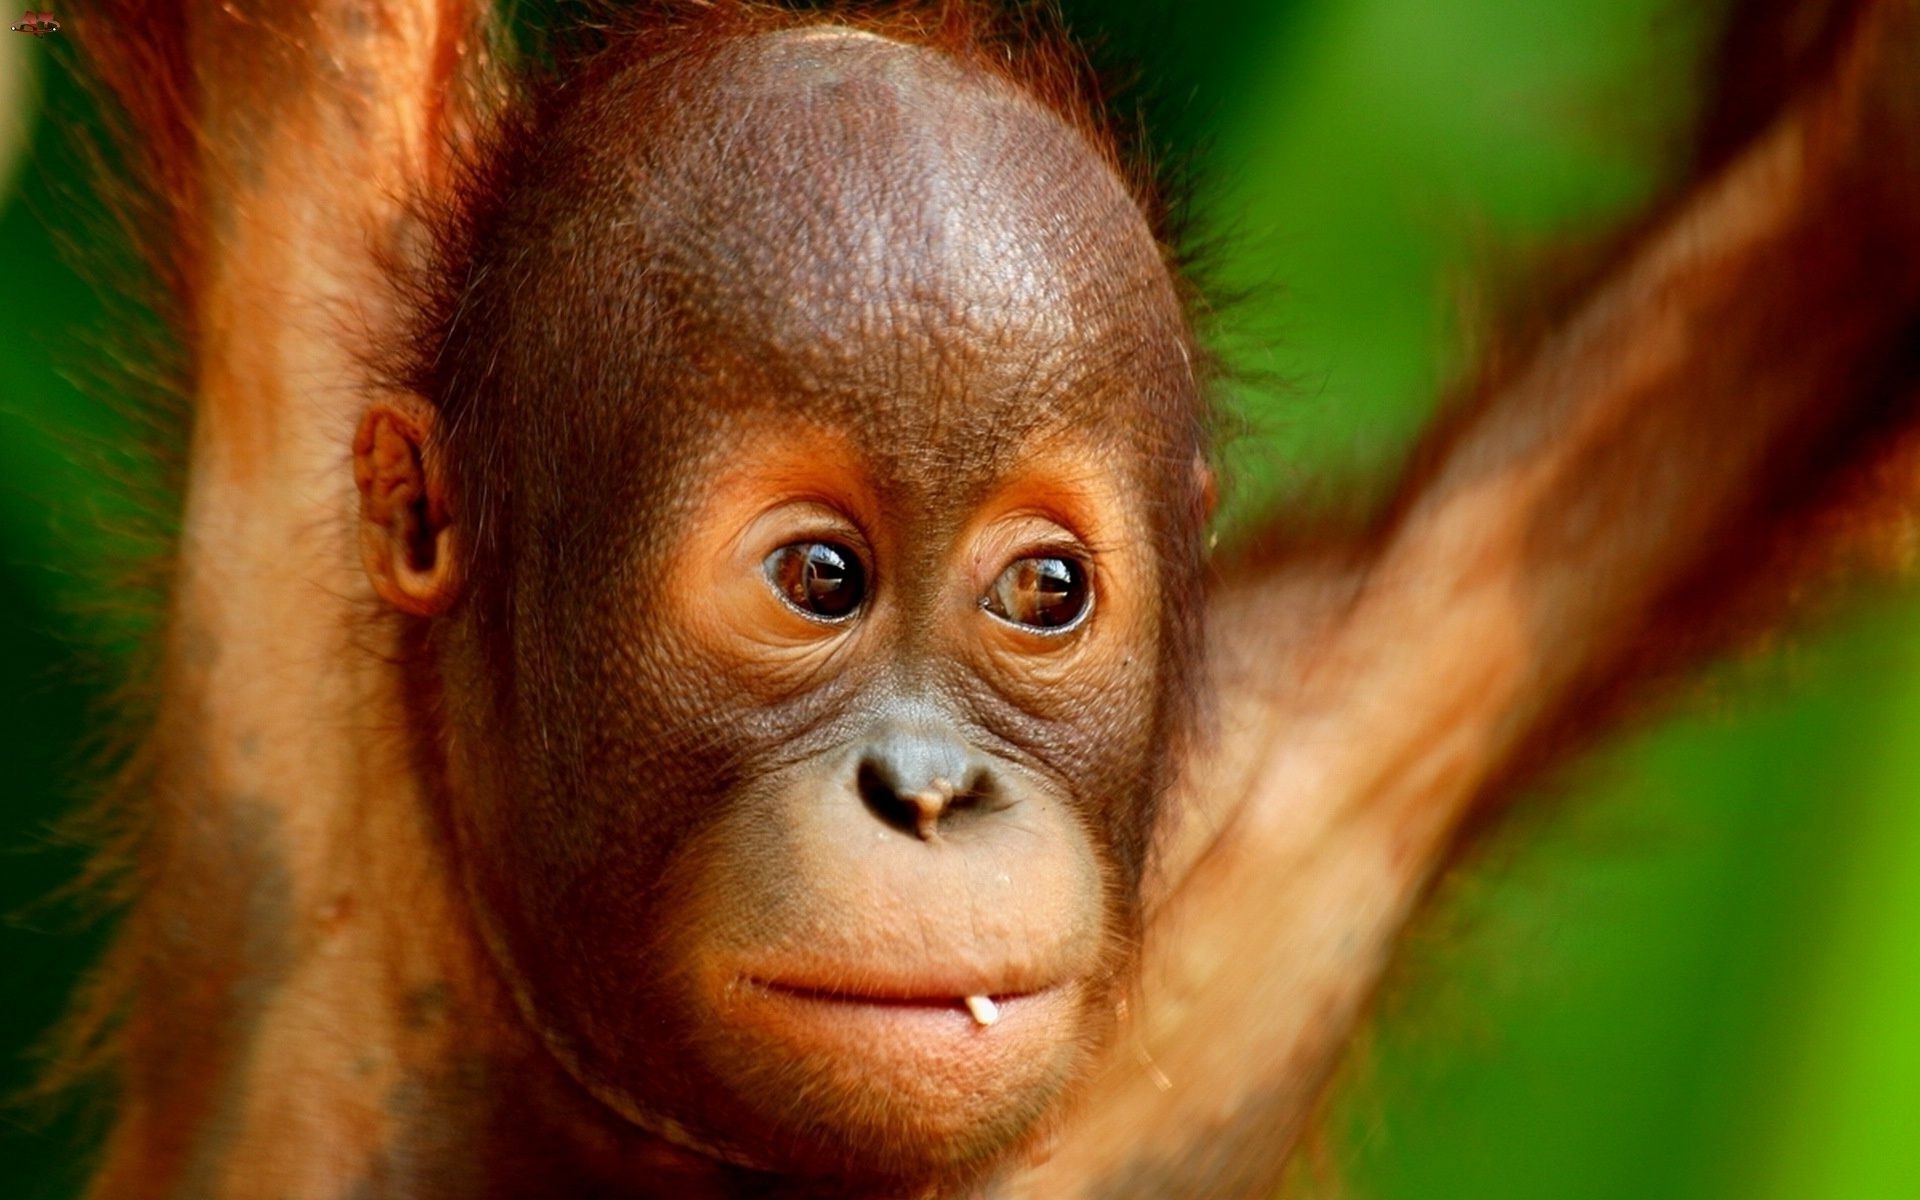 приматы обезьяна предстоятель джунгли кривляться дикой природы портрет тропический лес суматра млекопитающее орангутанг милые зоопарк один